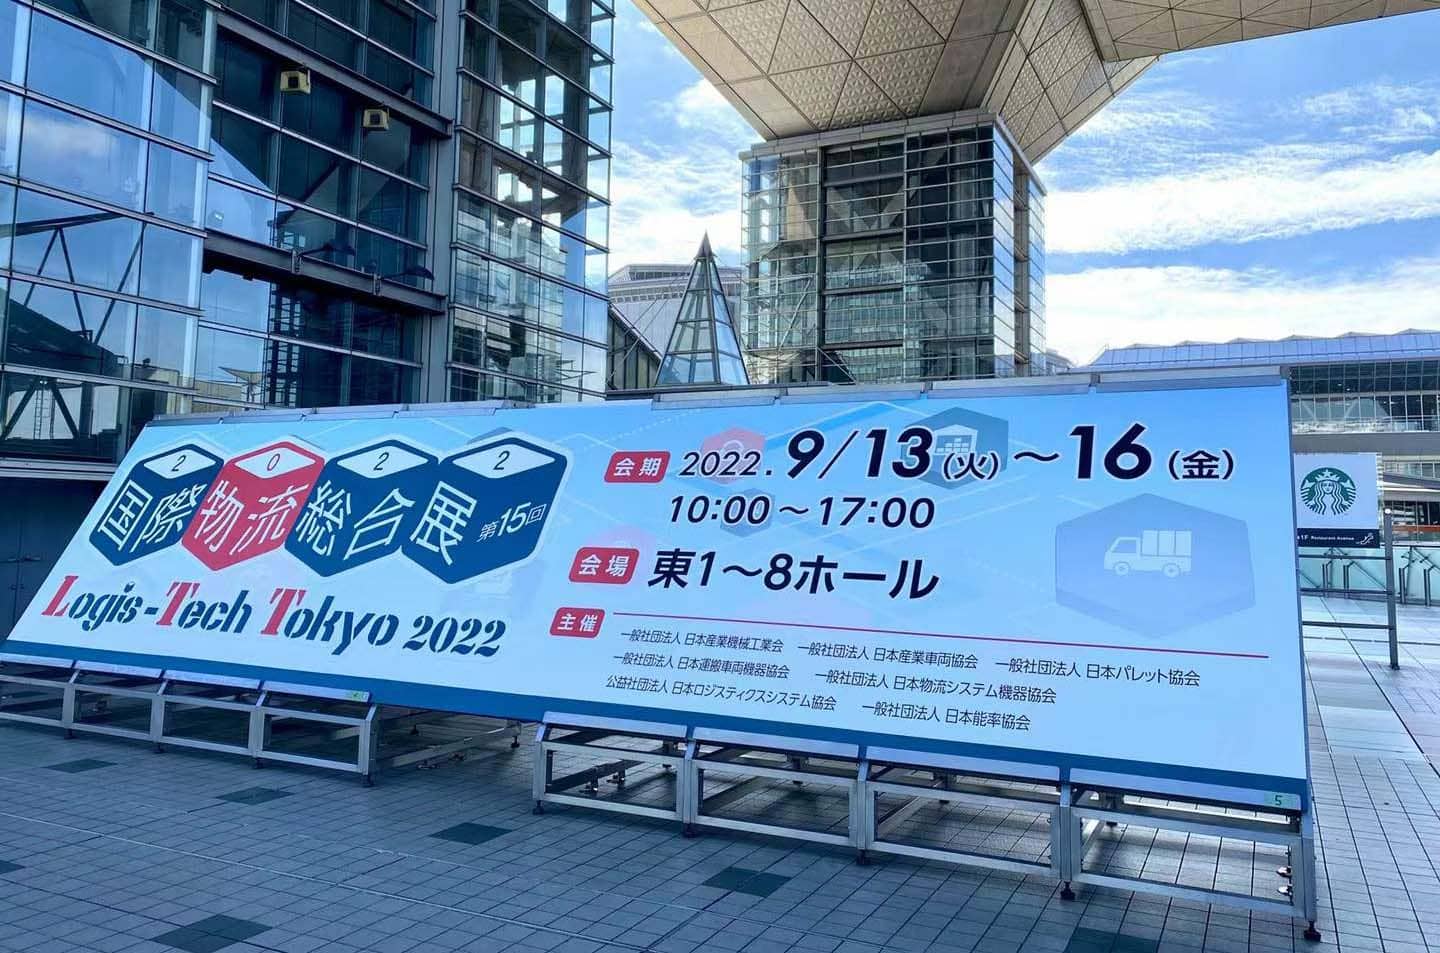 MIMA, 물류 세계 혁신 허브 2022-LTT 도쿄에 참석